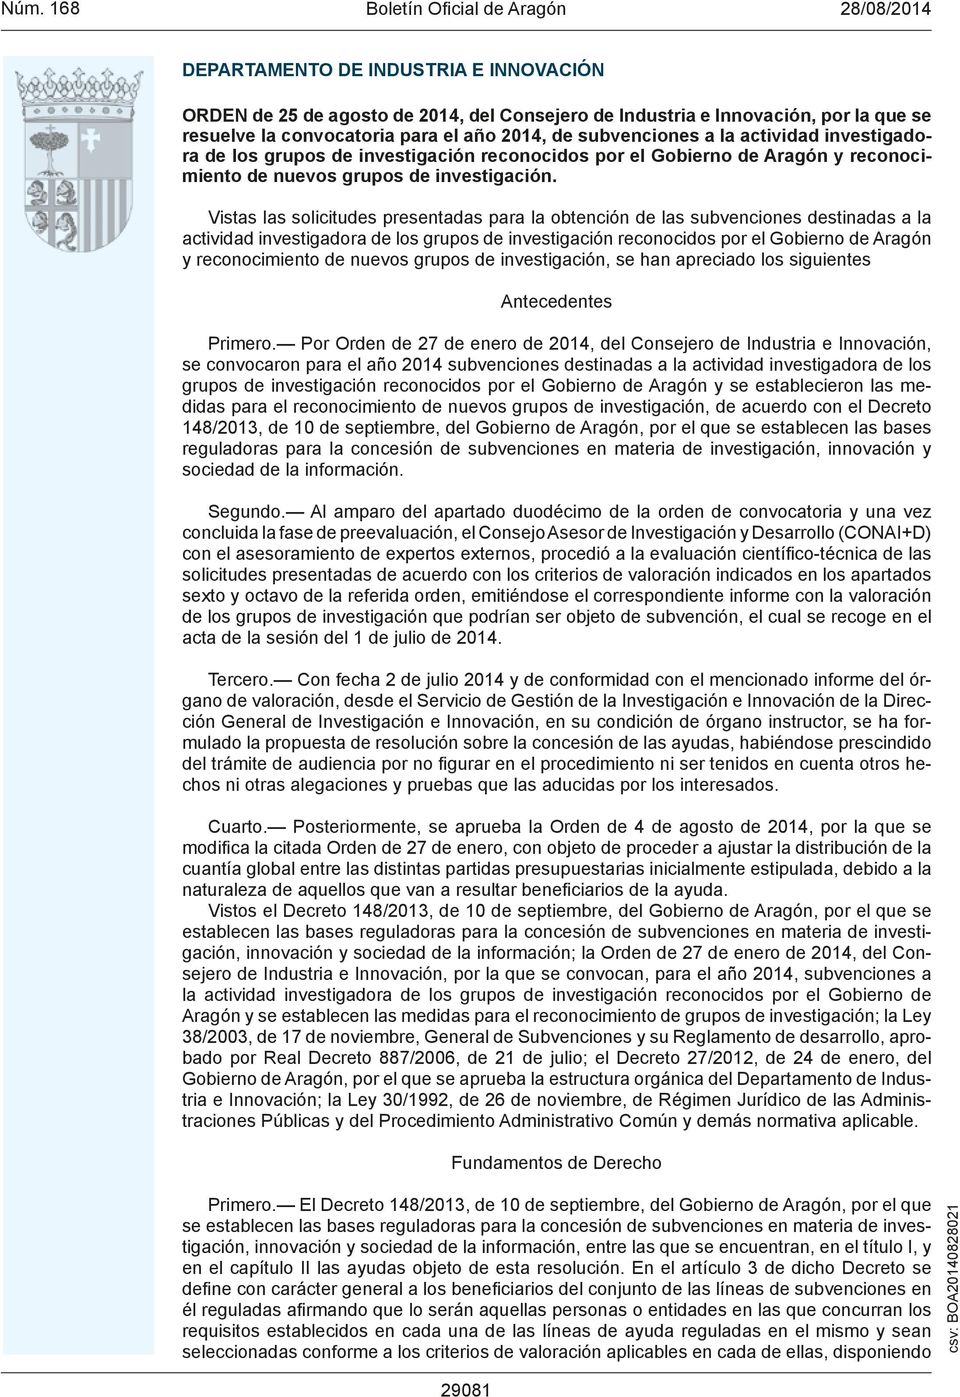 Vistas las solicitudes presentadas para la obtención de las subvenciones destinadas a la actividad investigadora de los grupos de investigación reconocidos por el Gobierno de Aragón y reconocimiento